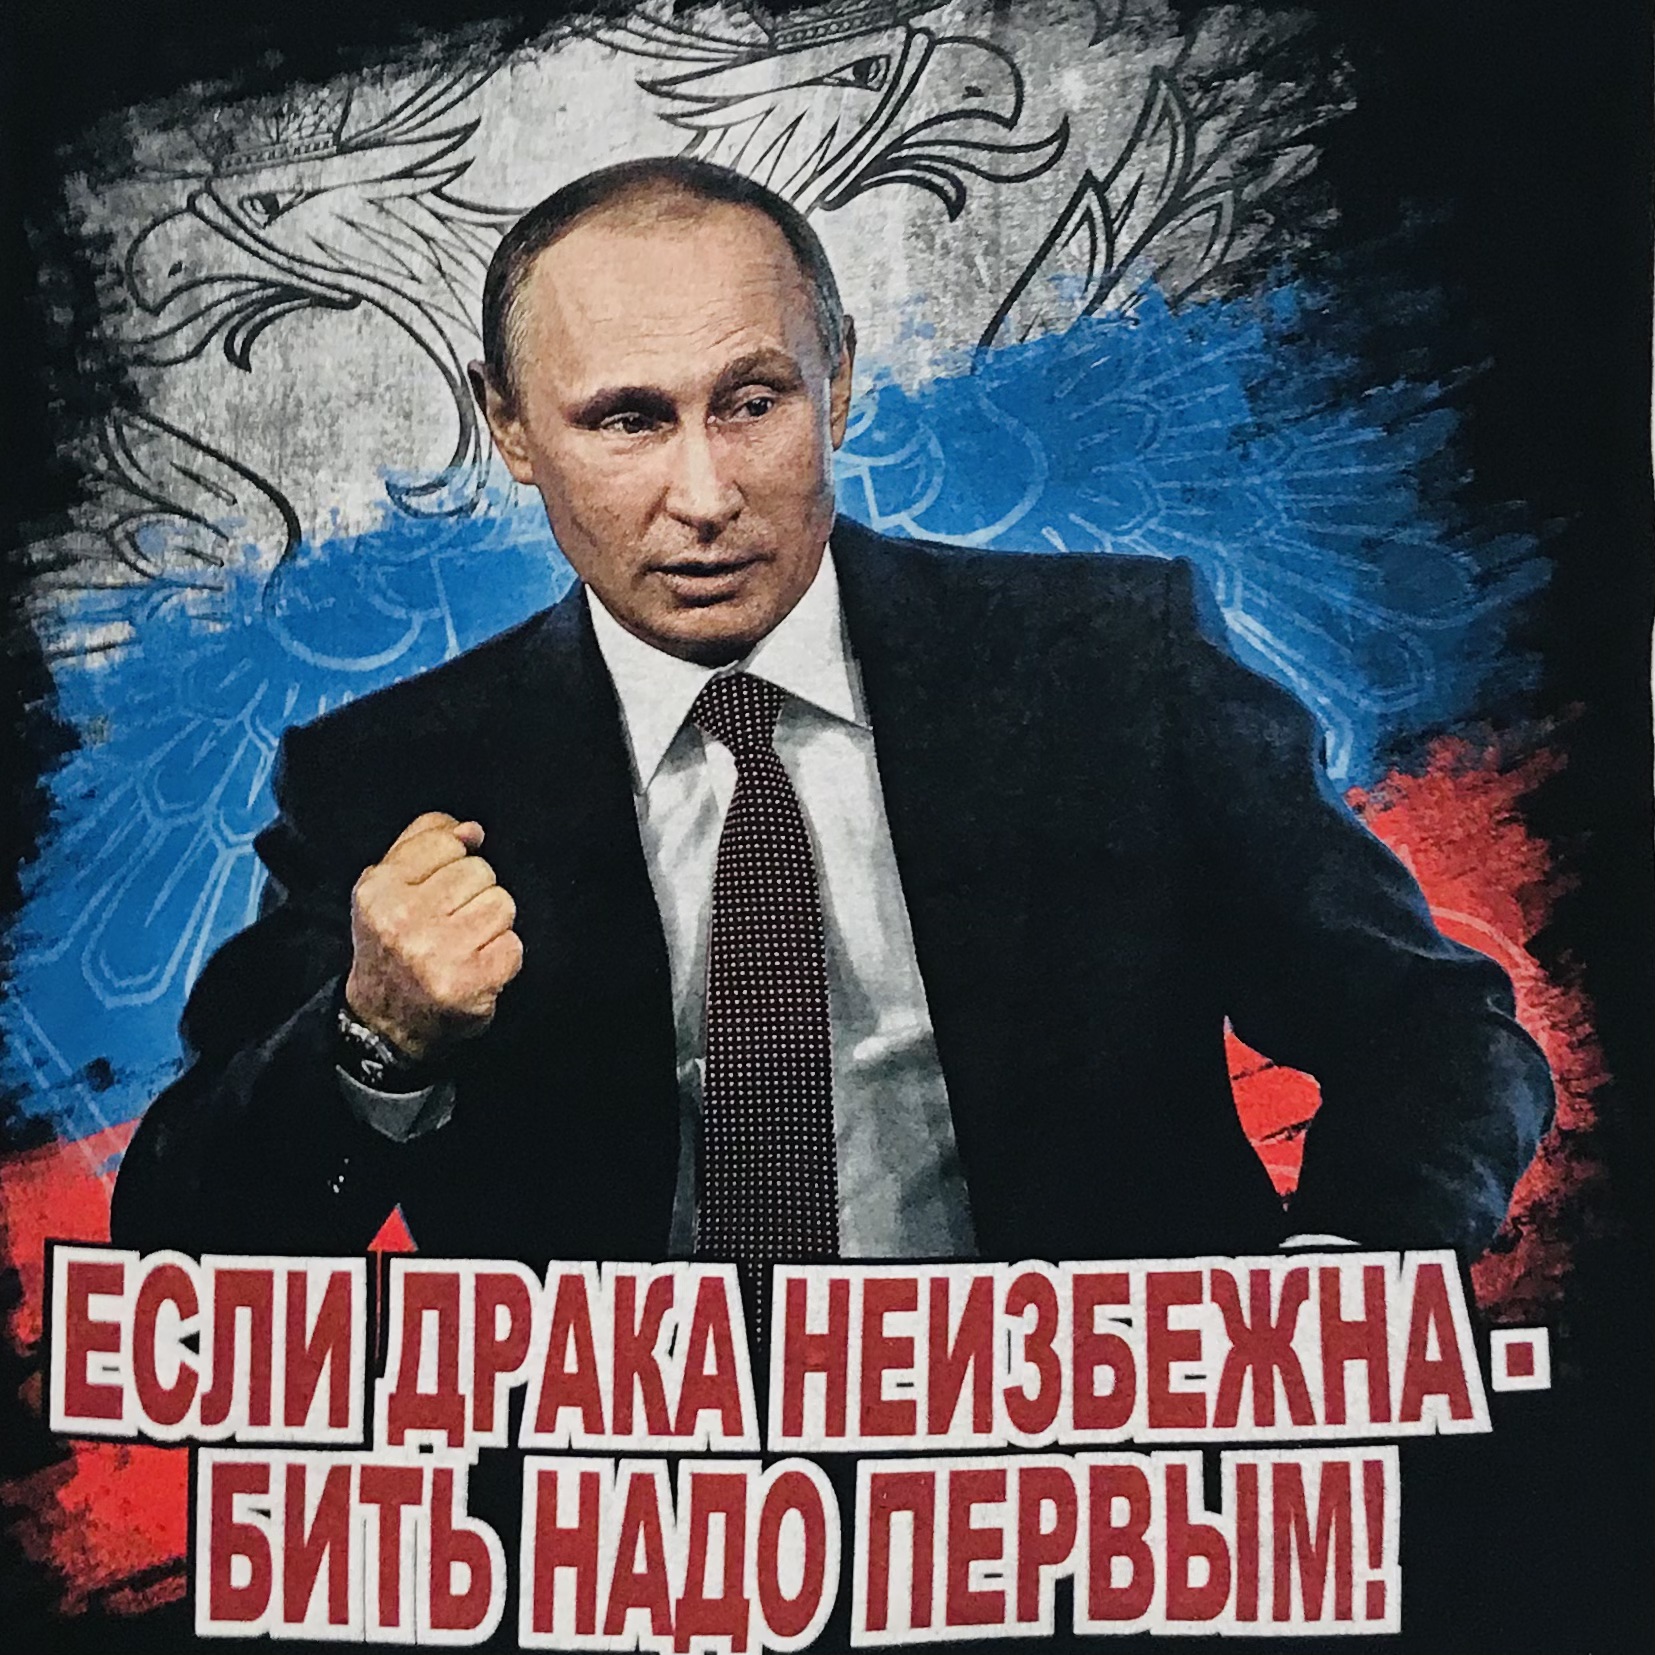 Футболка сувенирная Путин "Если драка неизбежна..."